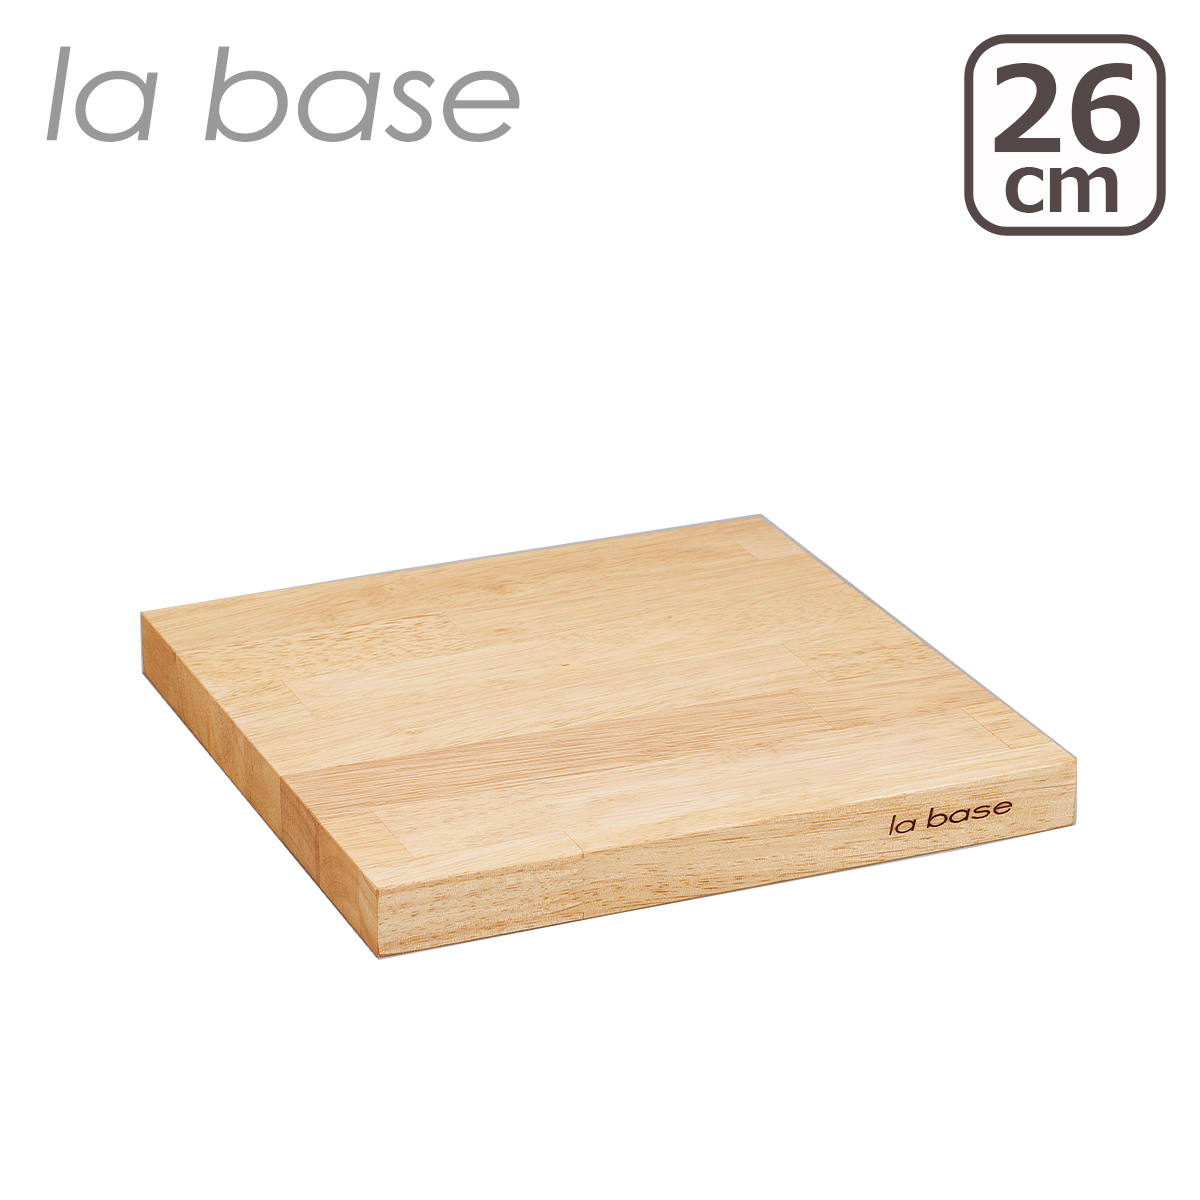 ラバーゼ まな板 26cm LB-009 日本製 ゴムの木 木製カッティングボード la base